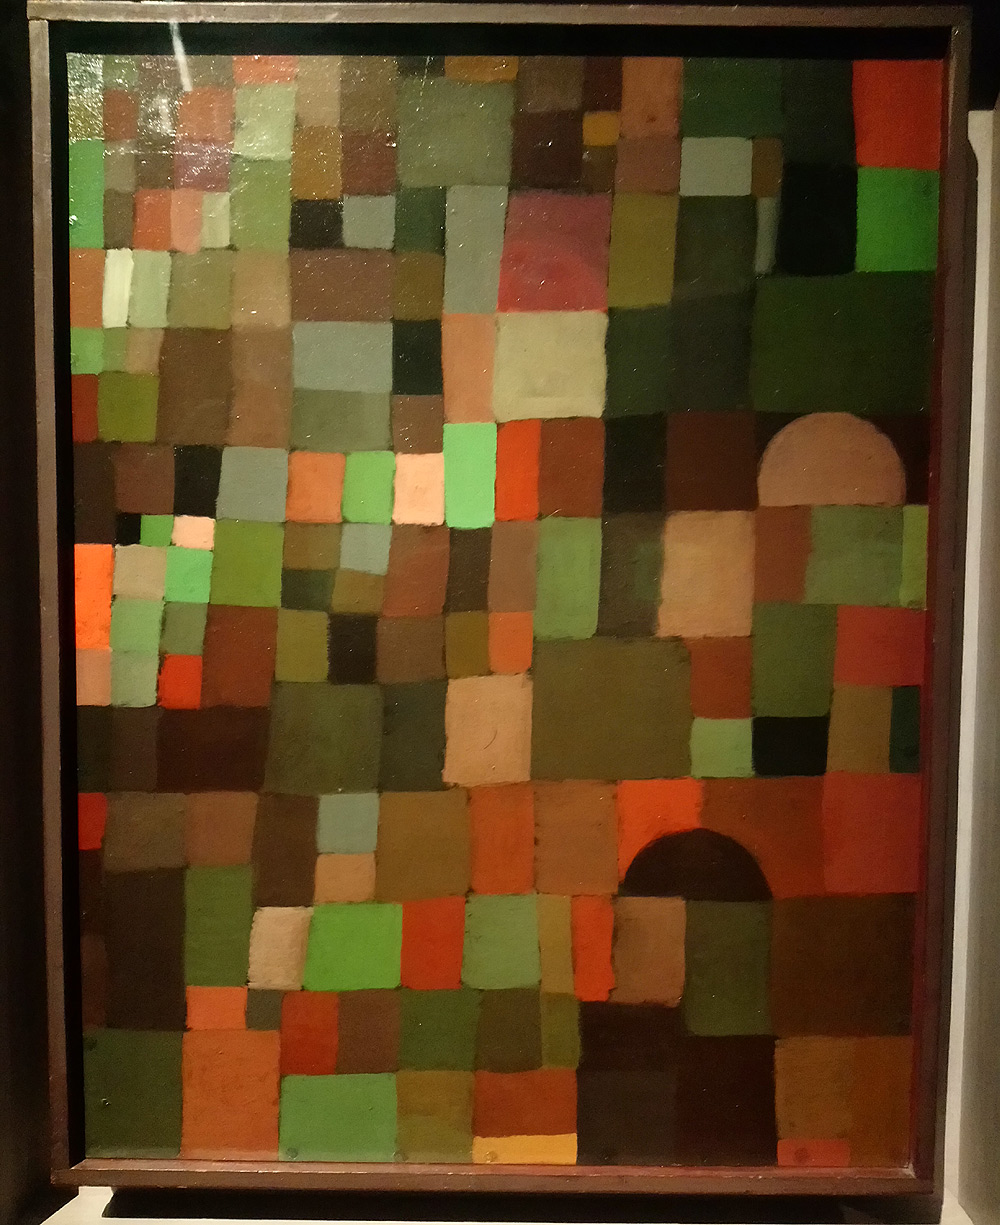 Paul Klee, Städtebild (rot grün gestuft) [mit der roten Kuppel],  Paesaggio urbano (in gradazioni di rosso-verde) [con la cupola rossa] (1923; olio su cartone su compensato, cornice originale, 46 × 35 cm; Berna, Zentrum Paul Klee, dono di Livia Klee)
